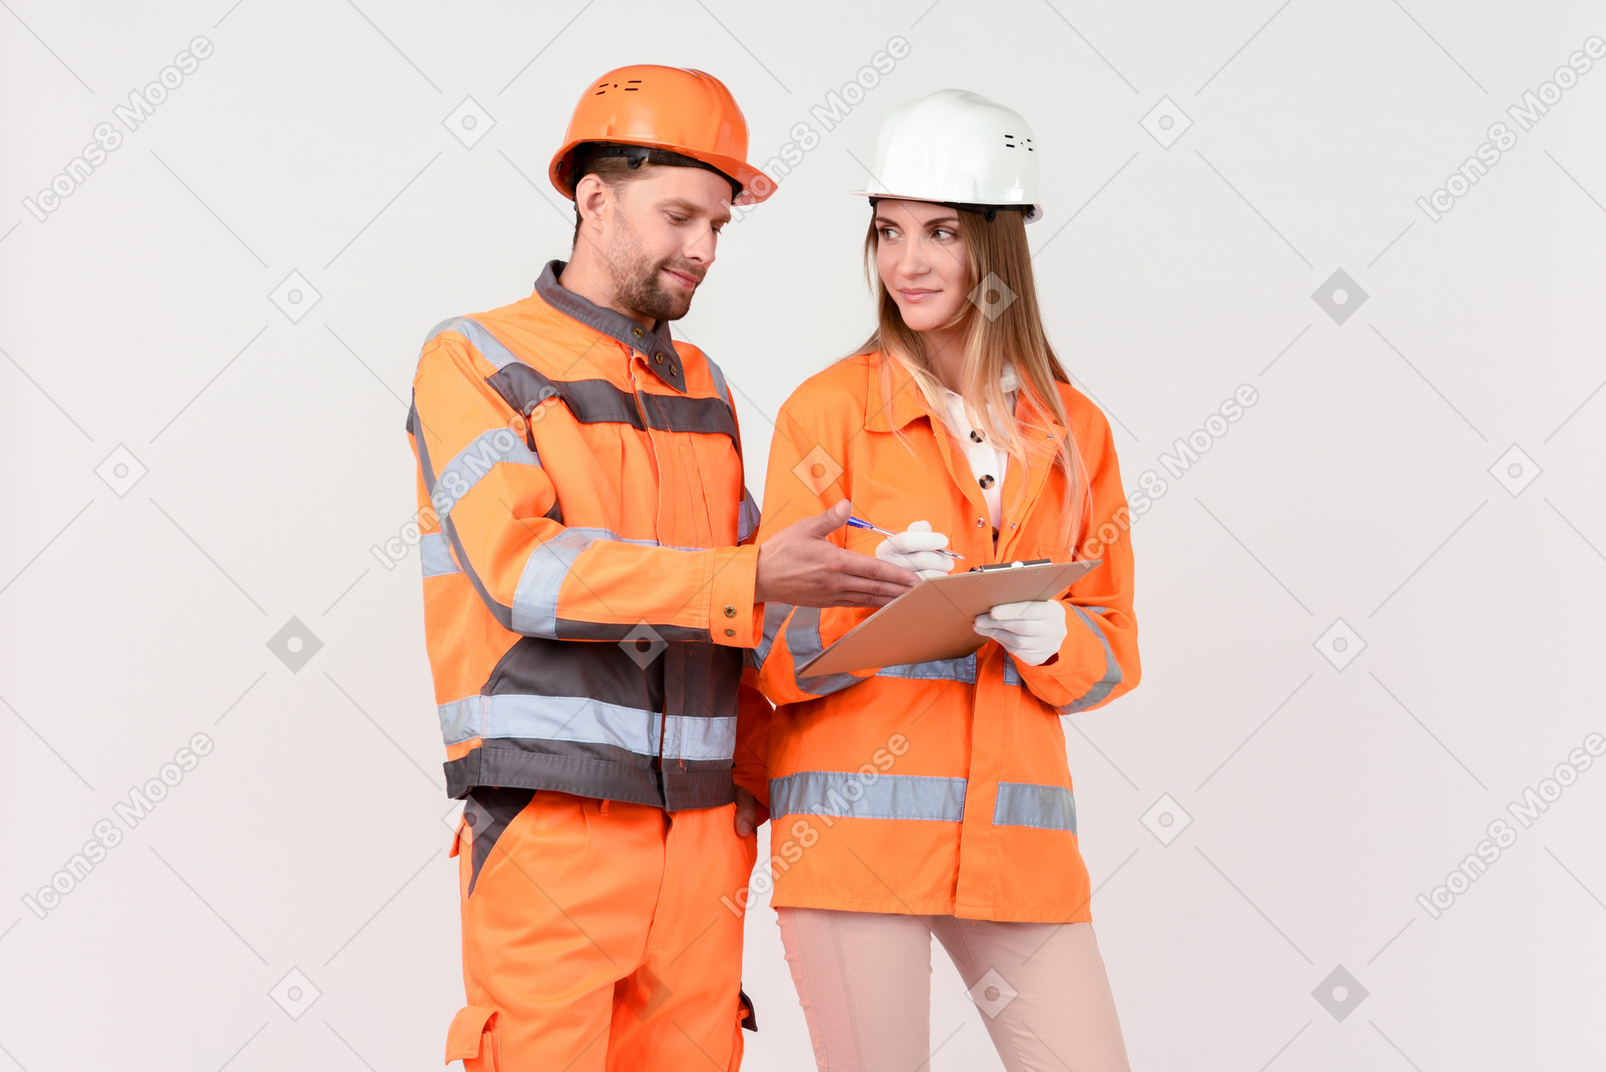 Männliche und weibliche arbeiter diskutieren etwas